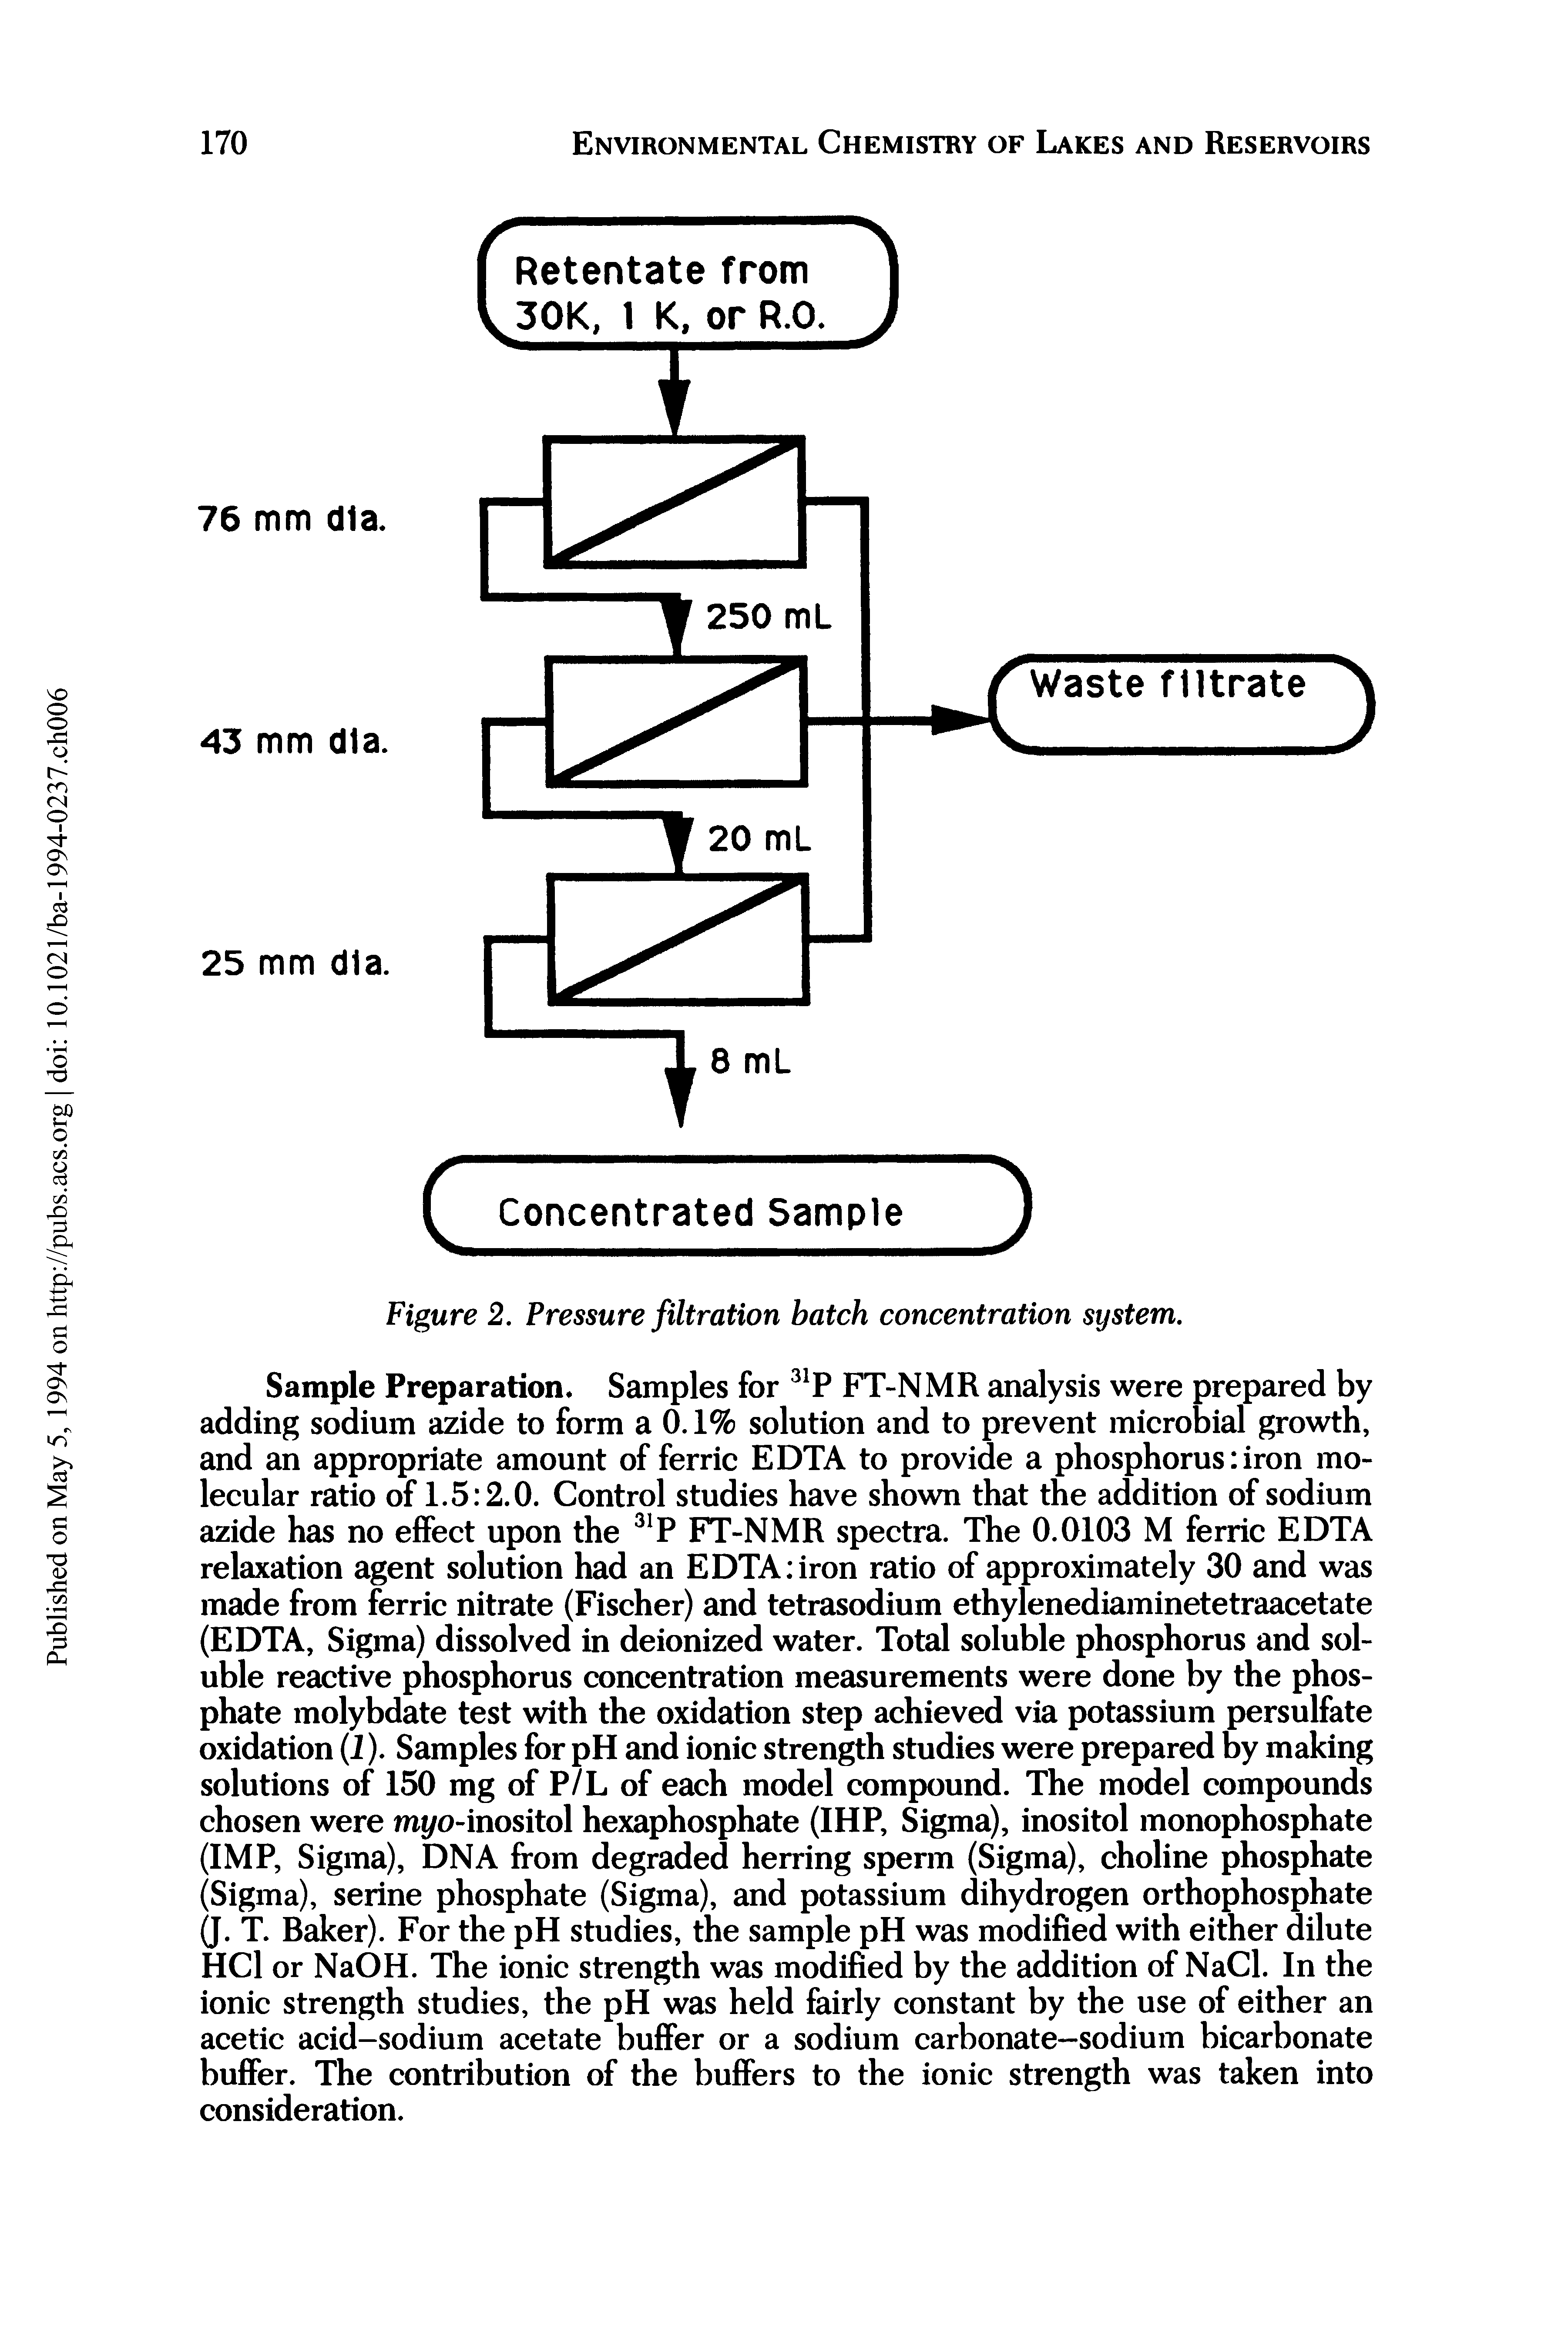 Figure 2. Pressure filtration batch concentration system.